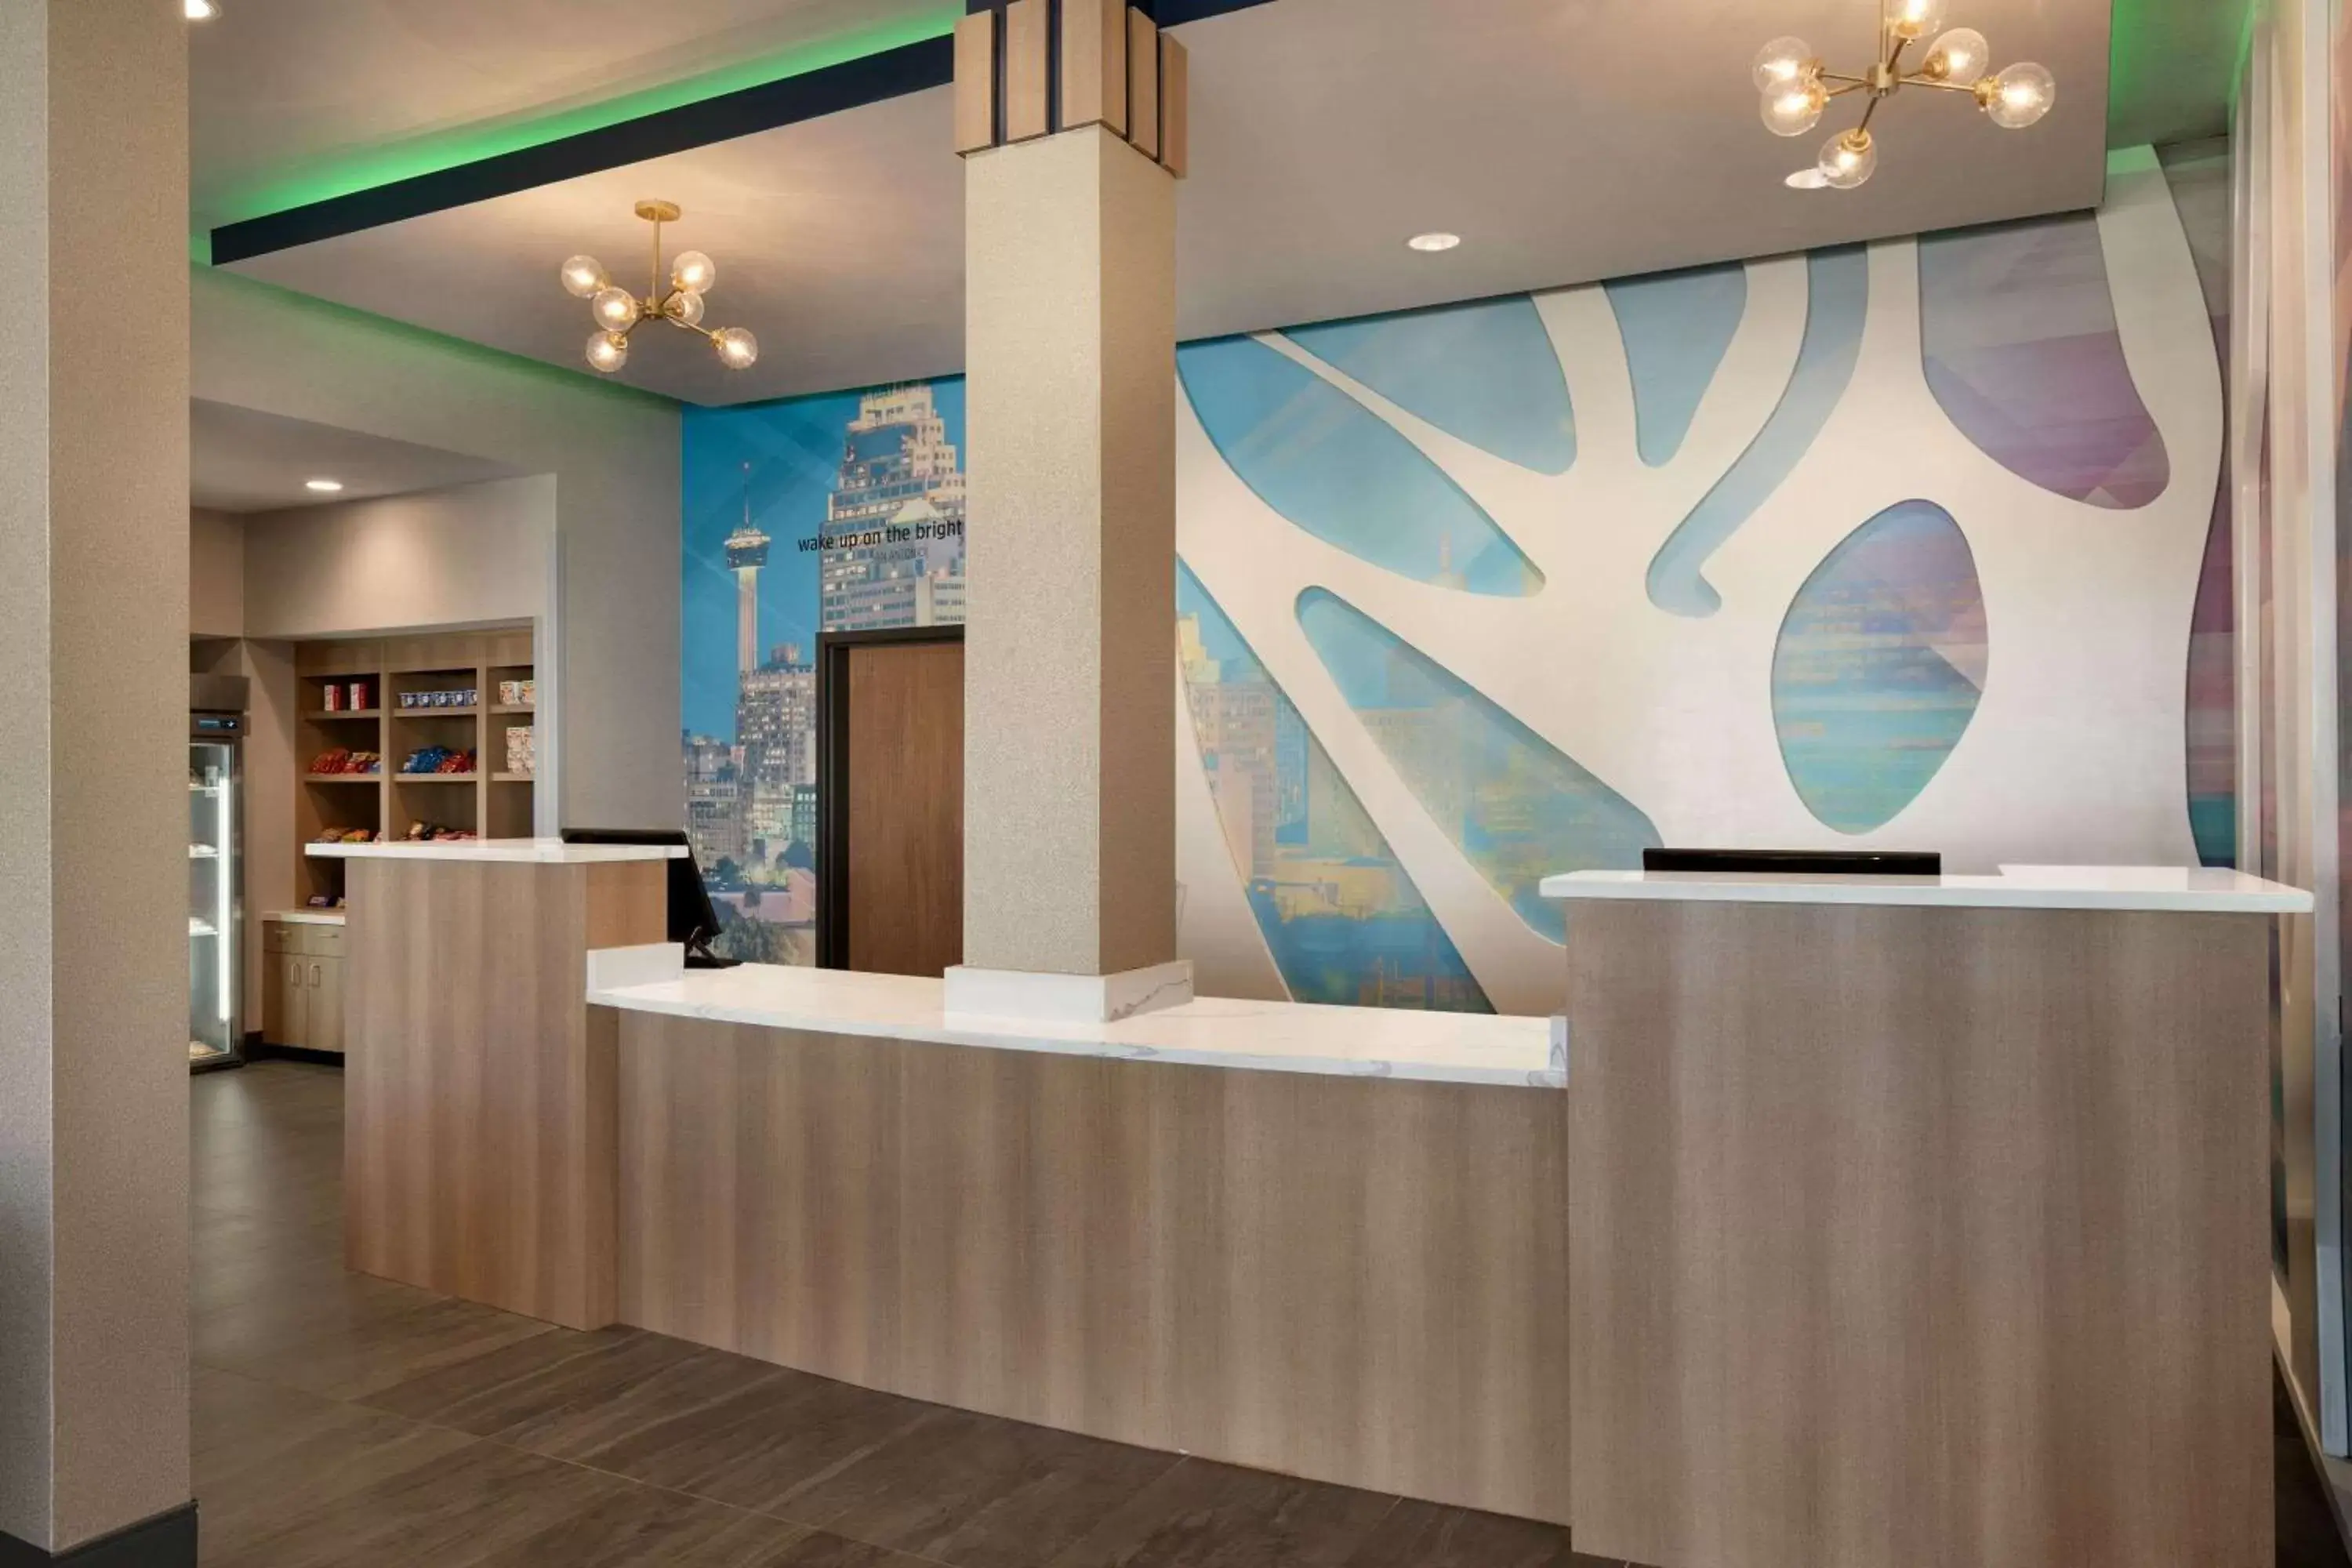 Lobby or reception, Lobby/Reception in La Quinta Inn & Suites by Wyndham San Antonio Seaworld LAFB